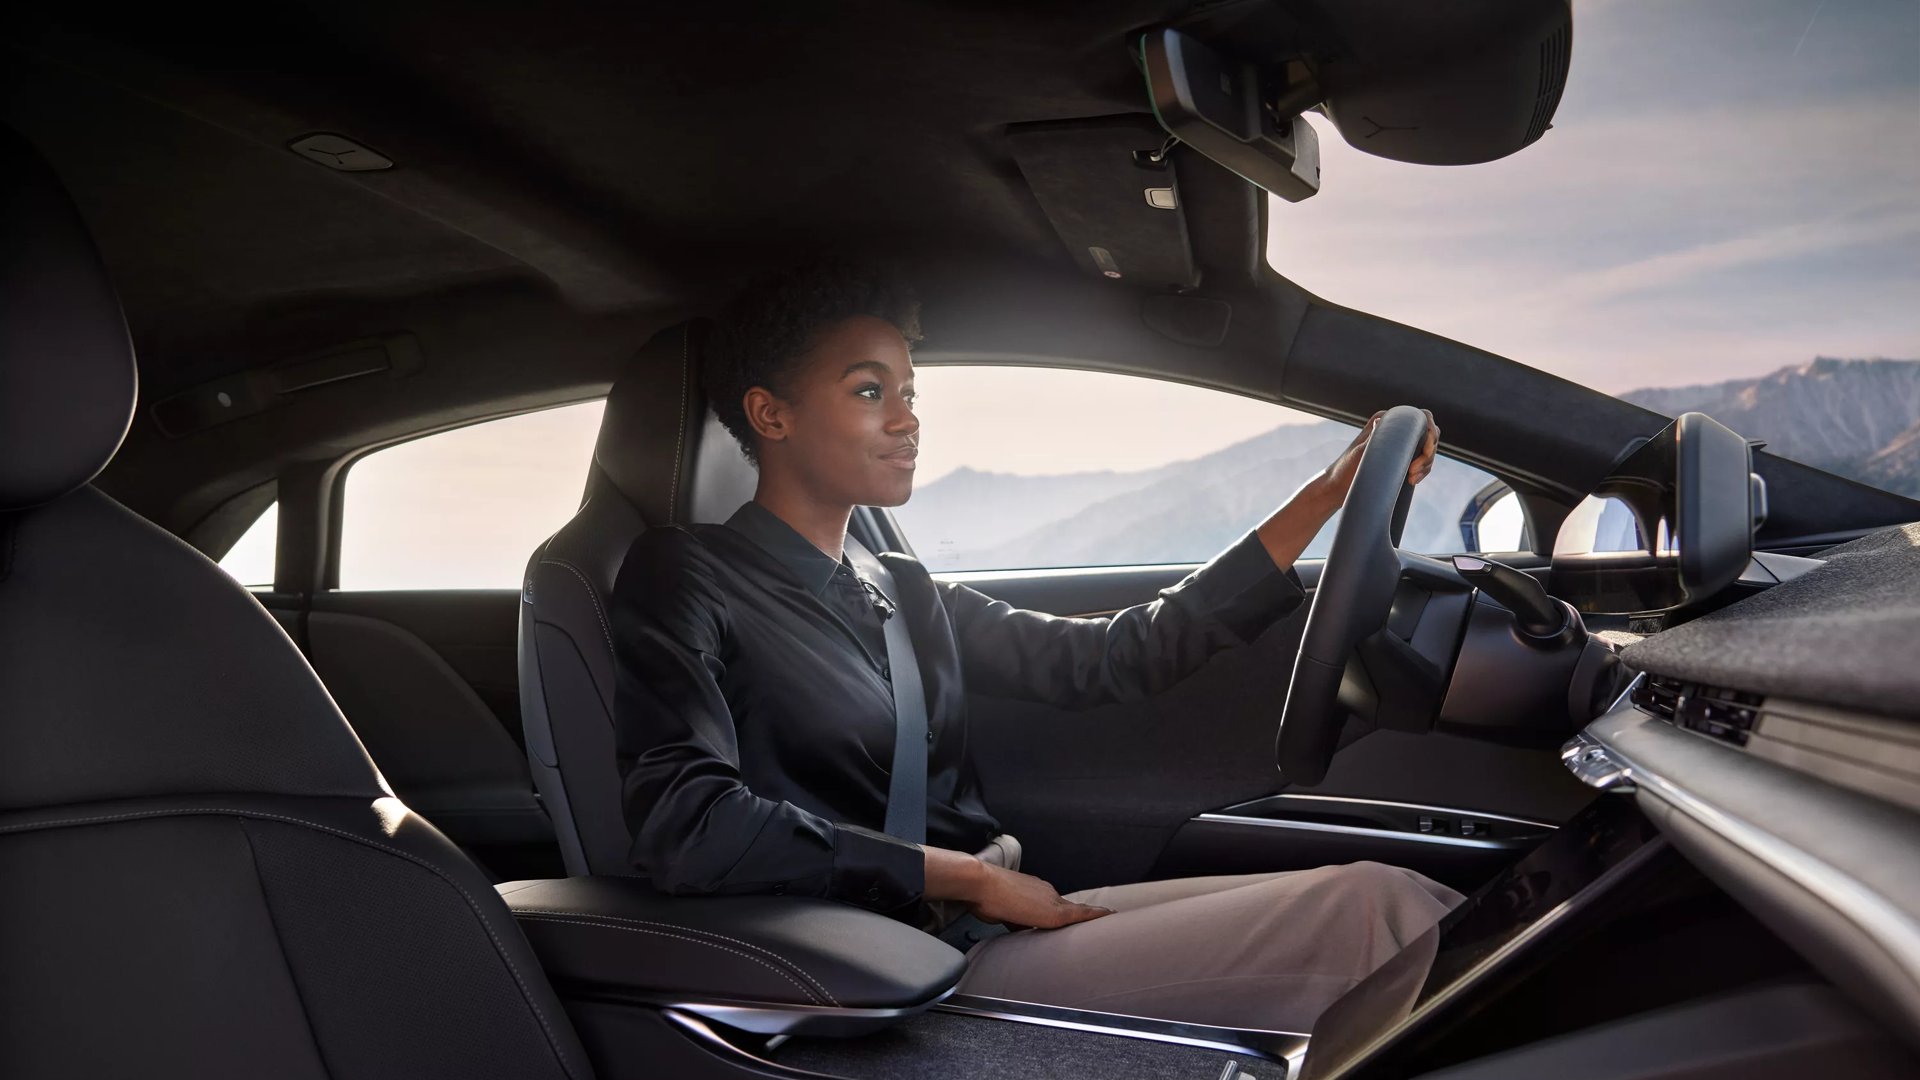 Die Aufnahme zeigt eine Frau, die zufrieden und voller Selbstvertrauen einen Lucid Air fährt. Das Bild ist vom Fußraum des Beifahrersitzes aus aufgenommen. Hinter der Frau sind durch die Autofenster Berge zu sehen.